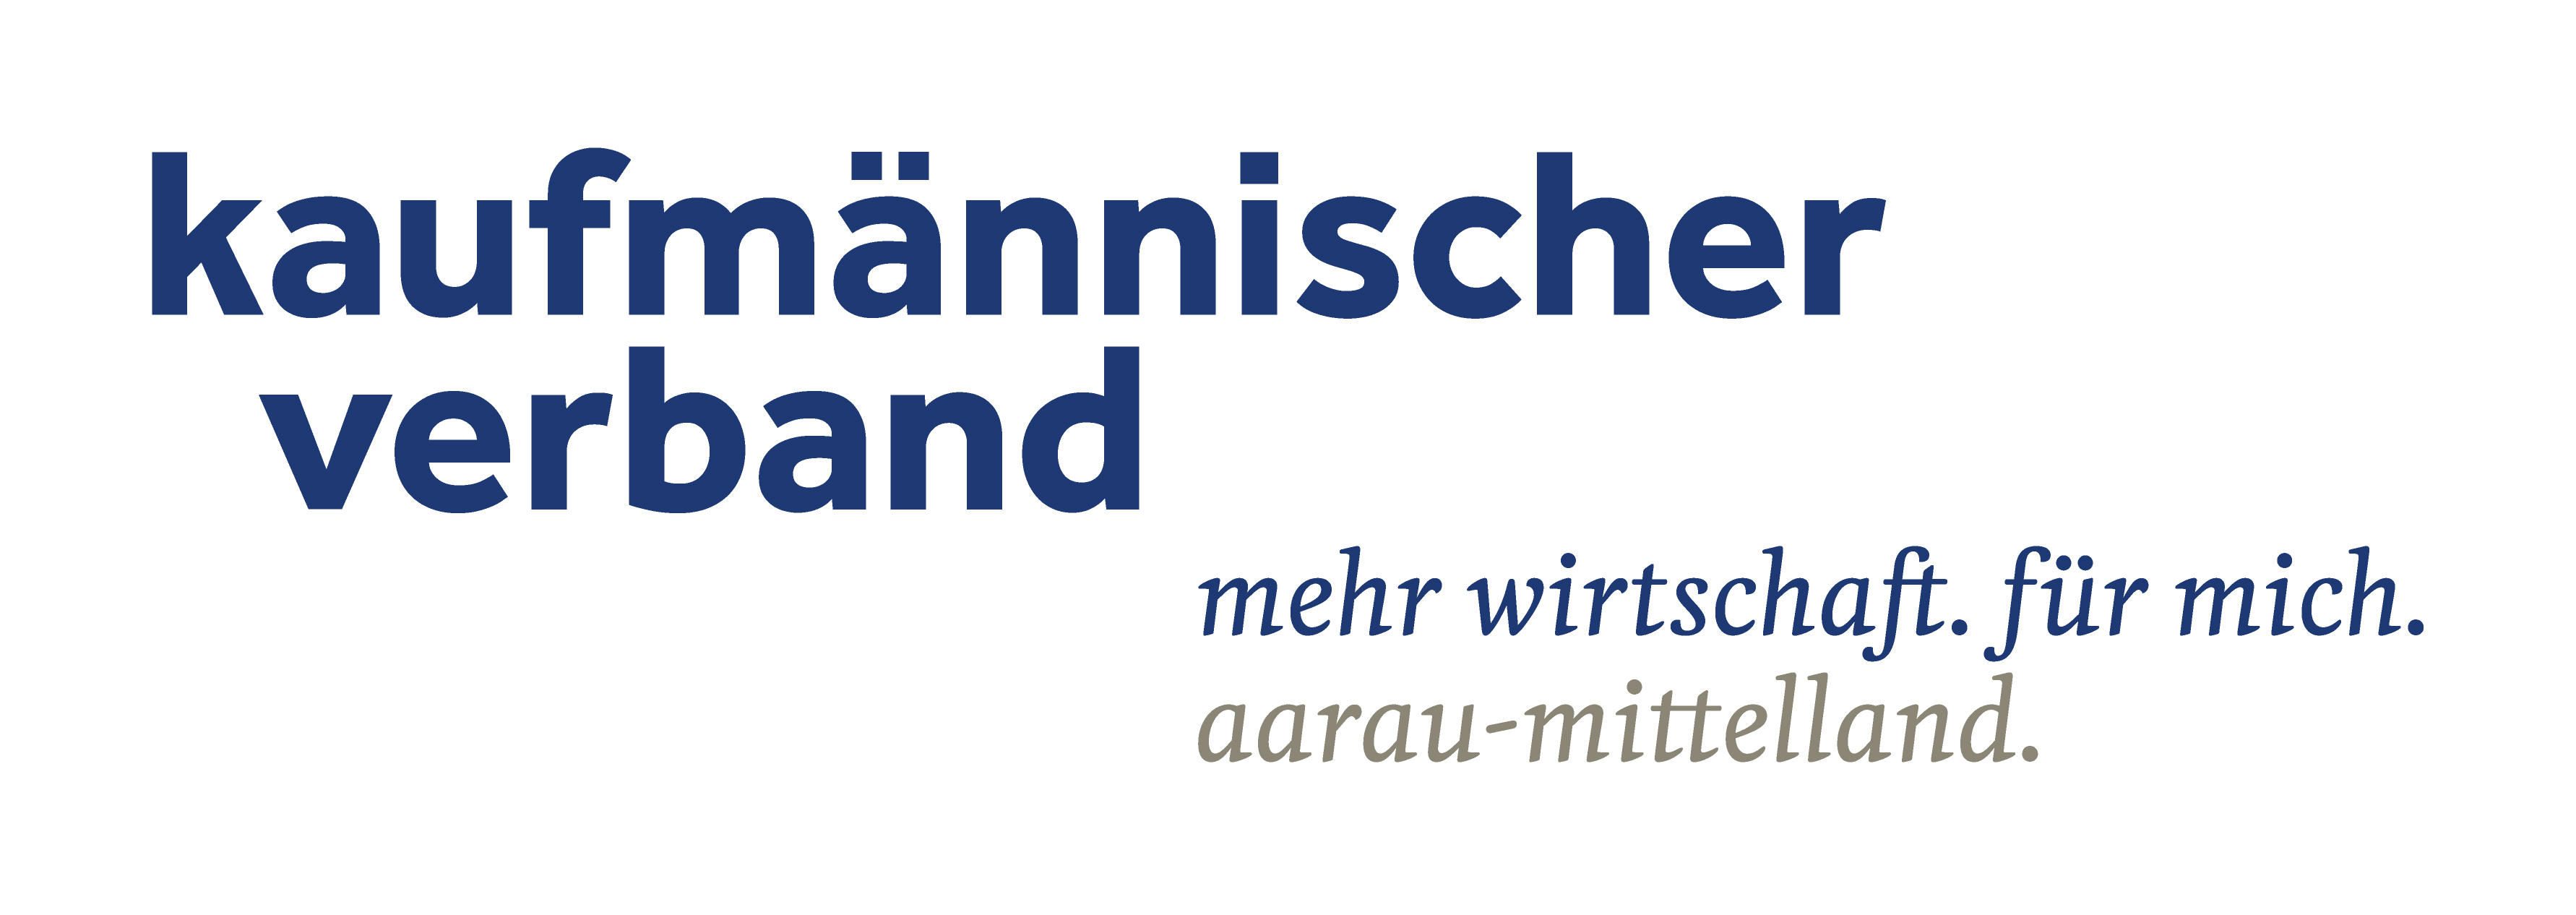 Kaufmännischer Verband Aarau-Mittelland